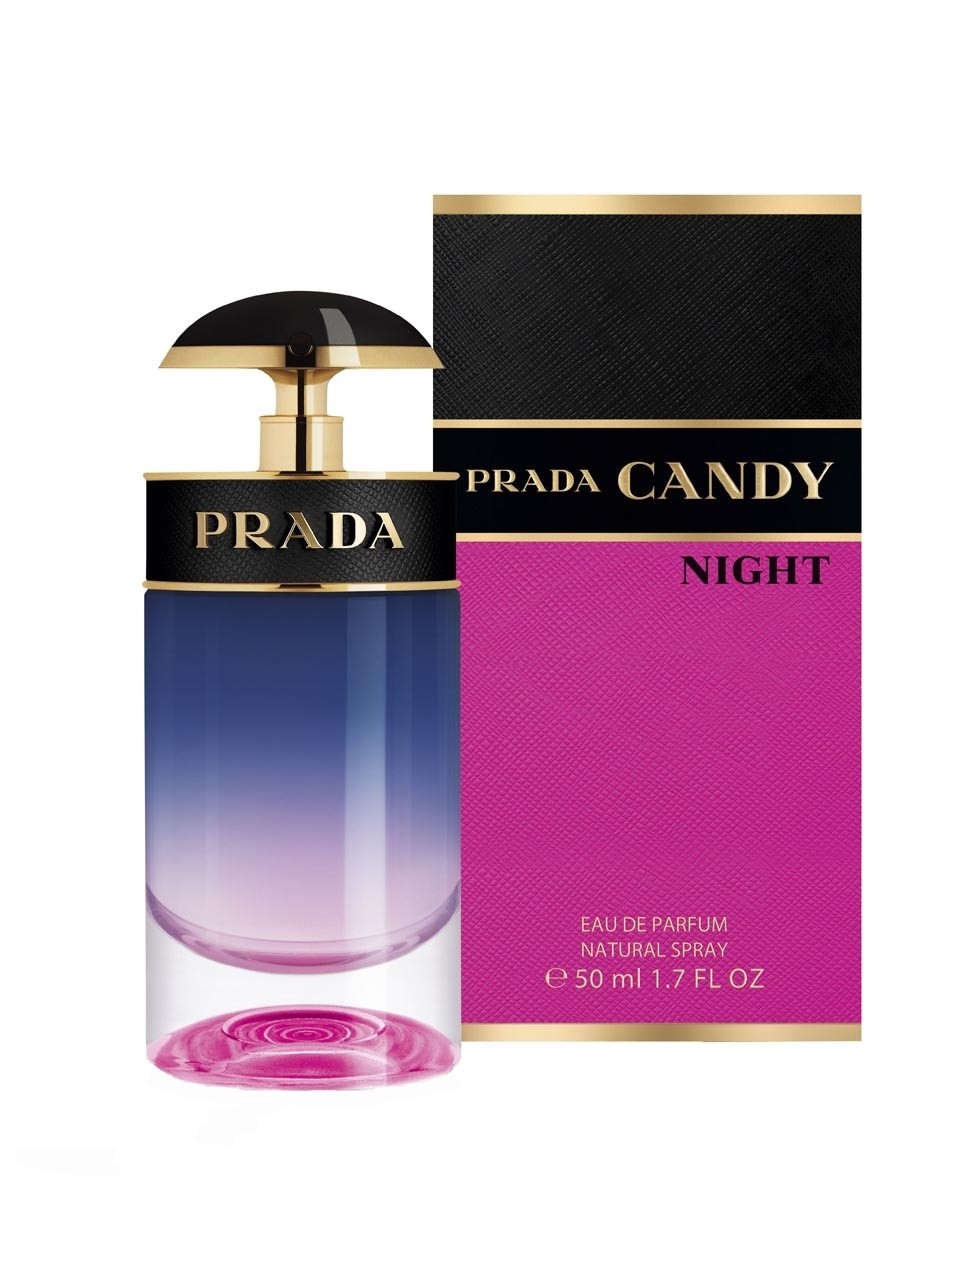 prada new perfume 2019, OFF 74%,www 